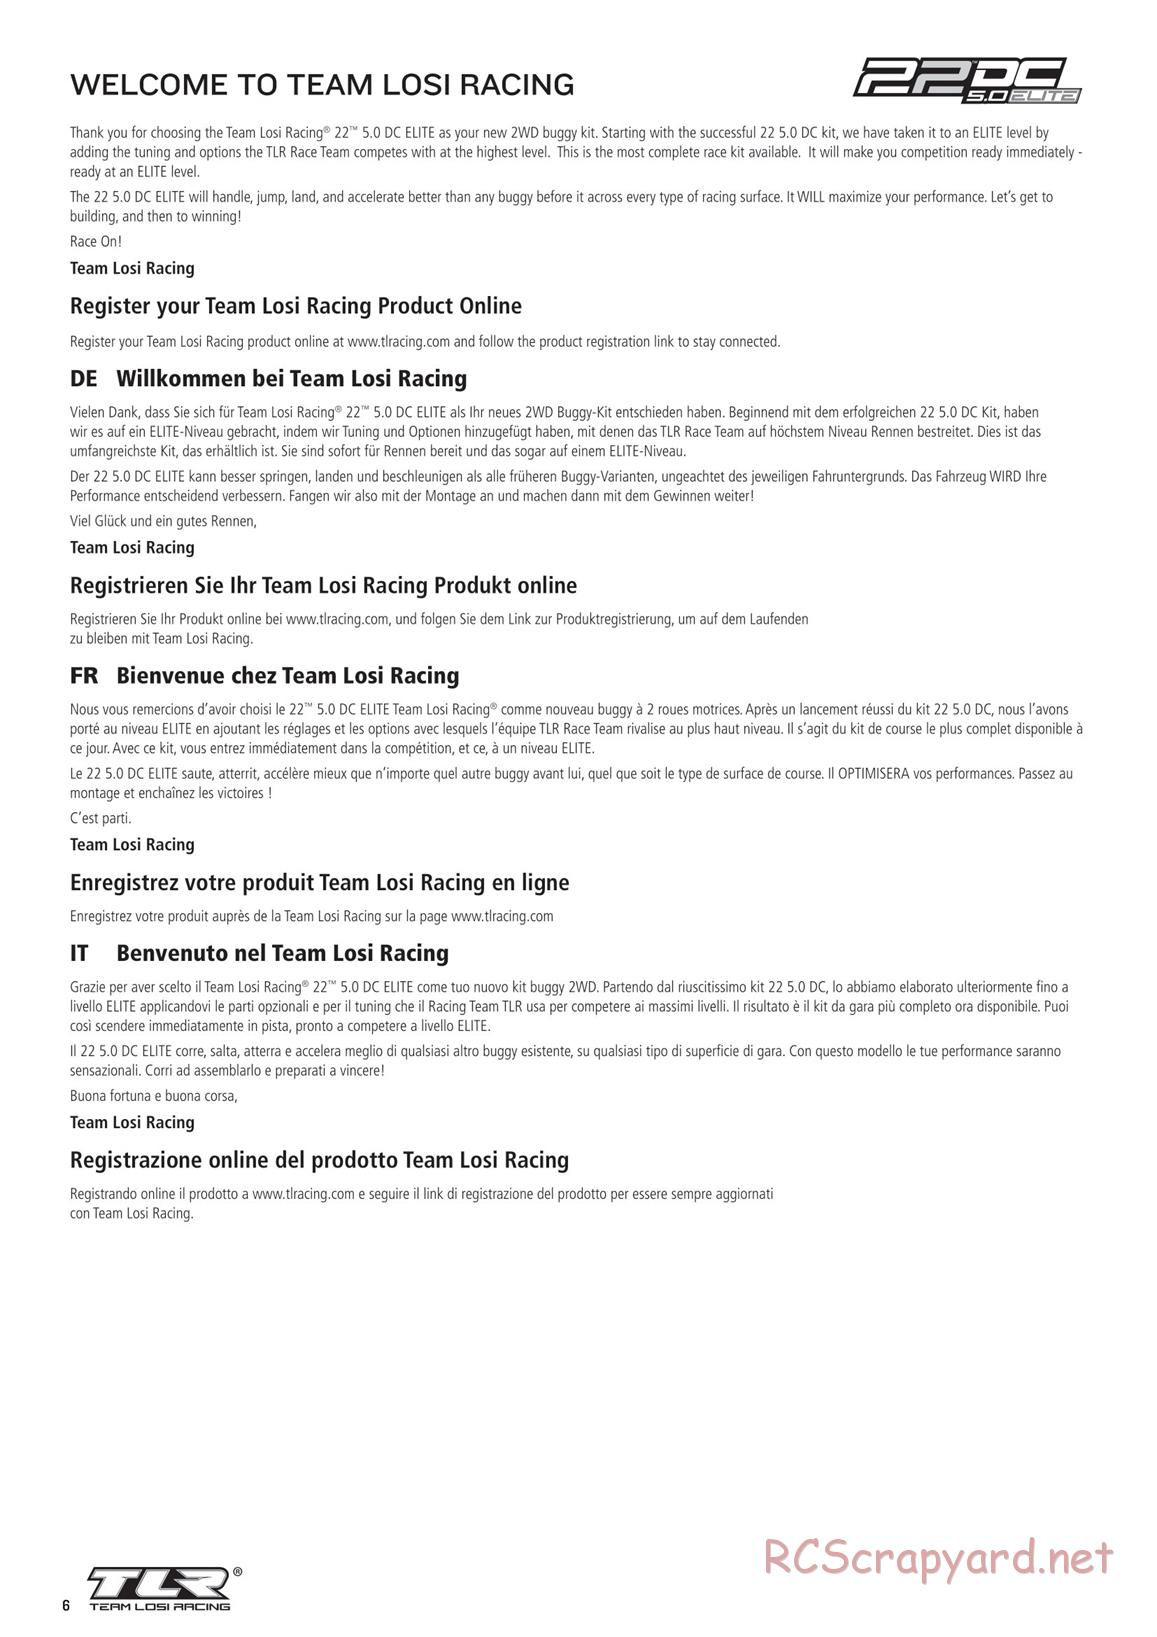 Team Losi - TLR 22 5.0 DC Elite Race - Manual - Page 6